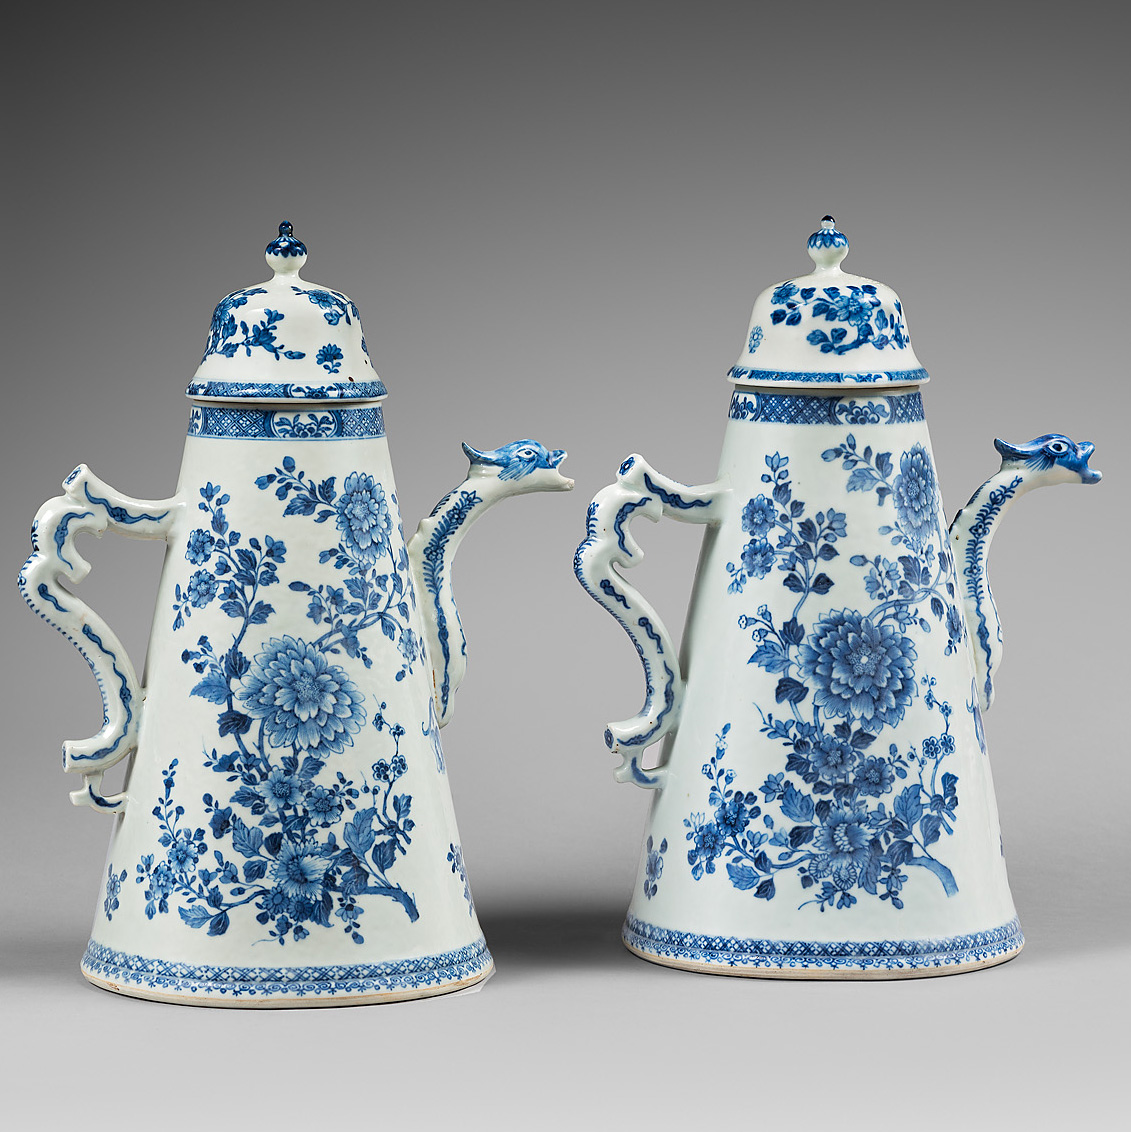 Porcelain Époque Qianlong (1736-1795), vers 1730-1740 , China